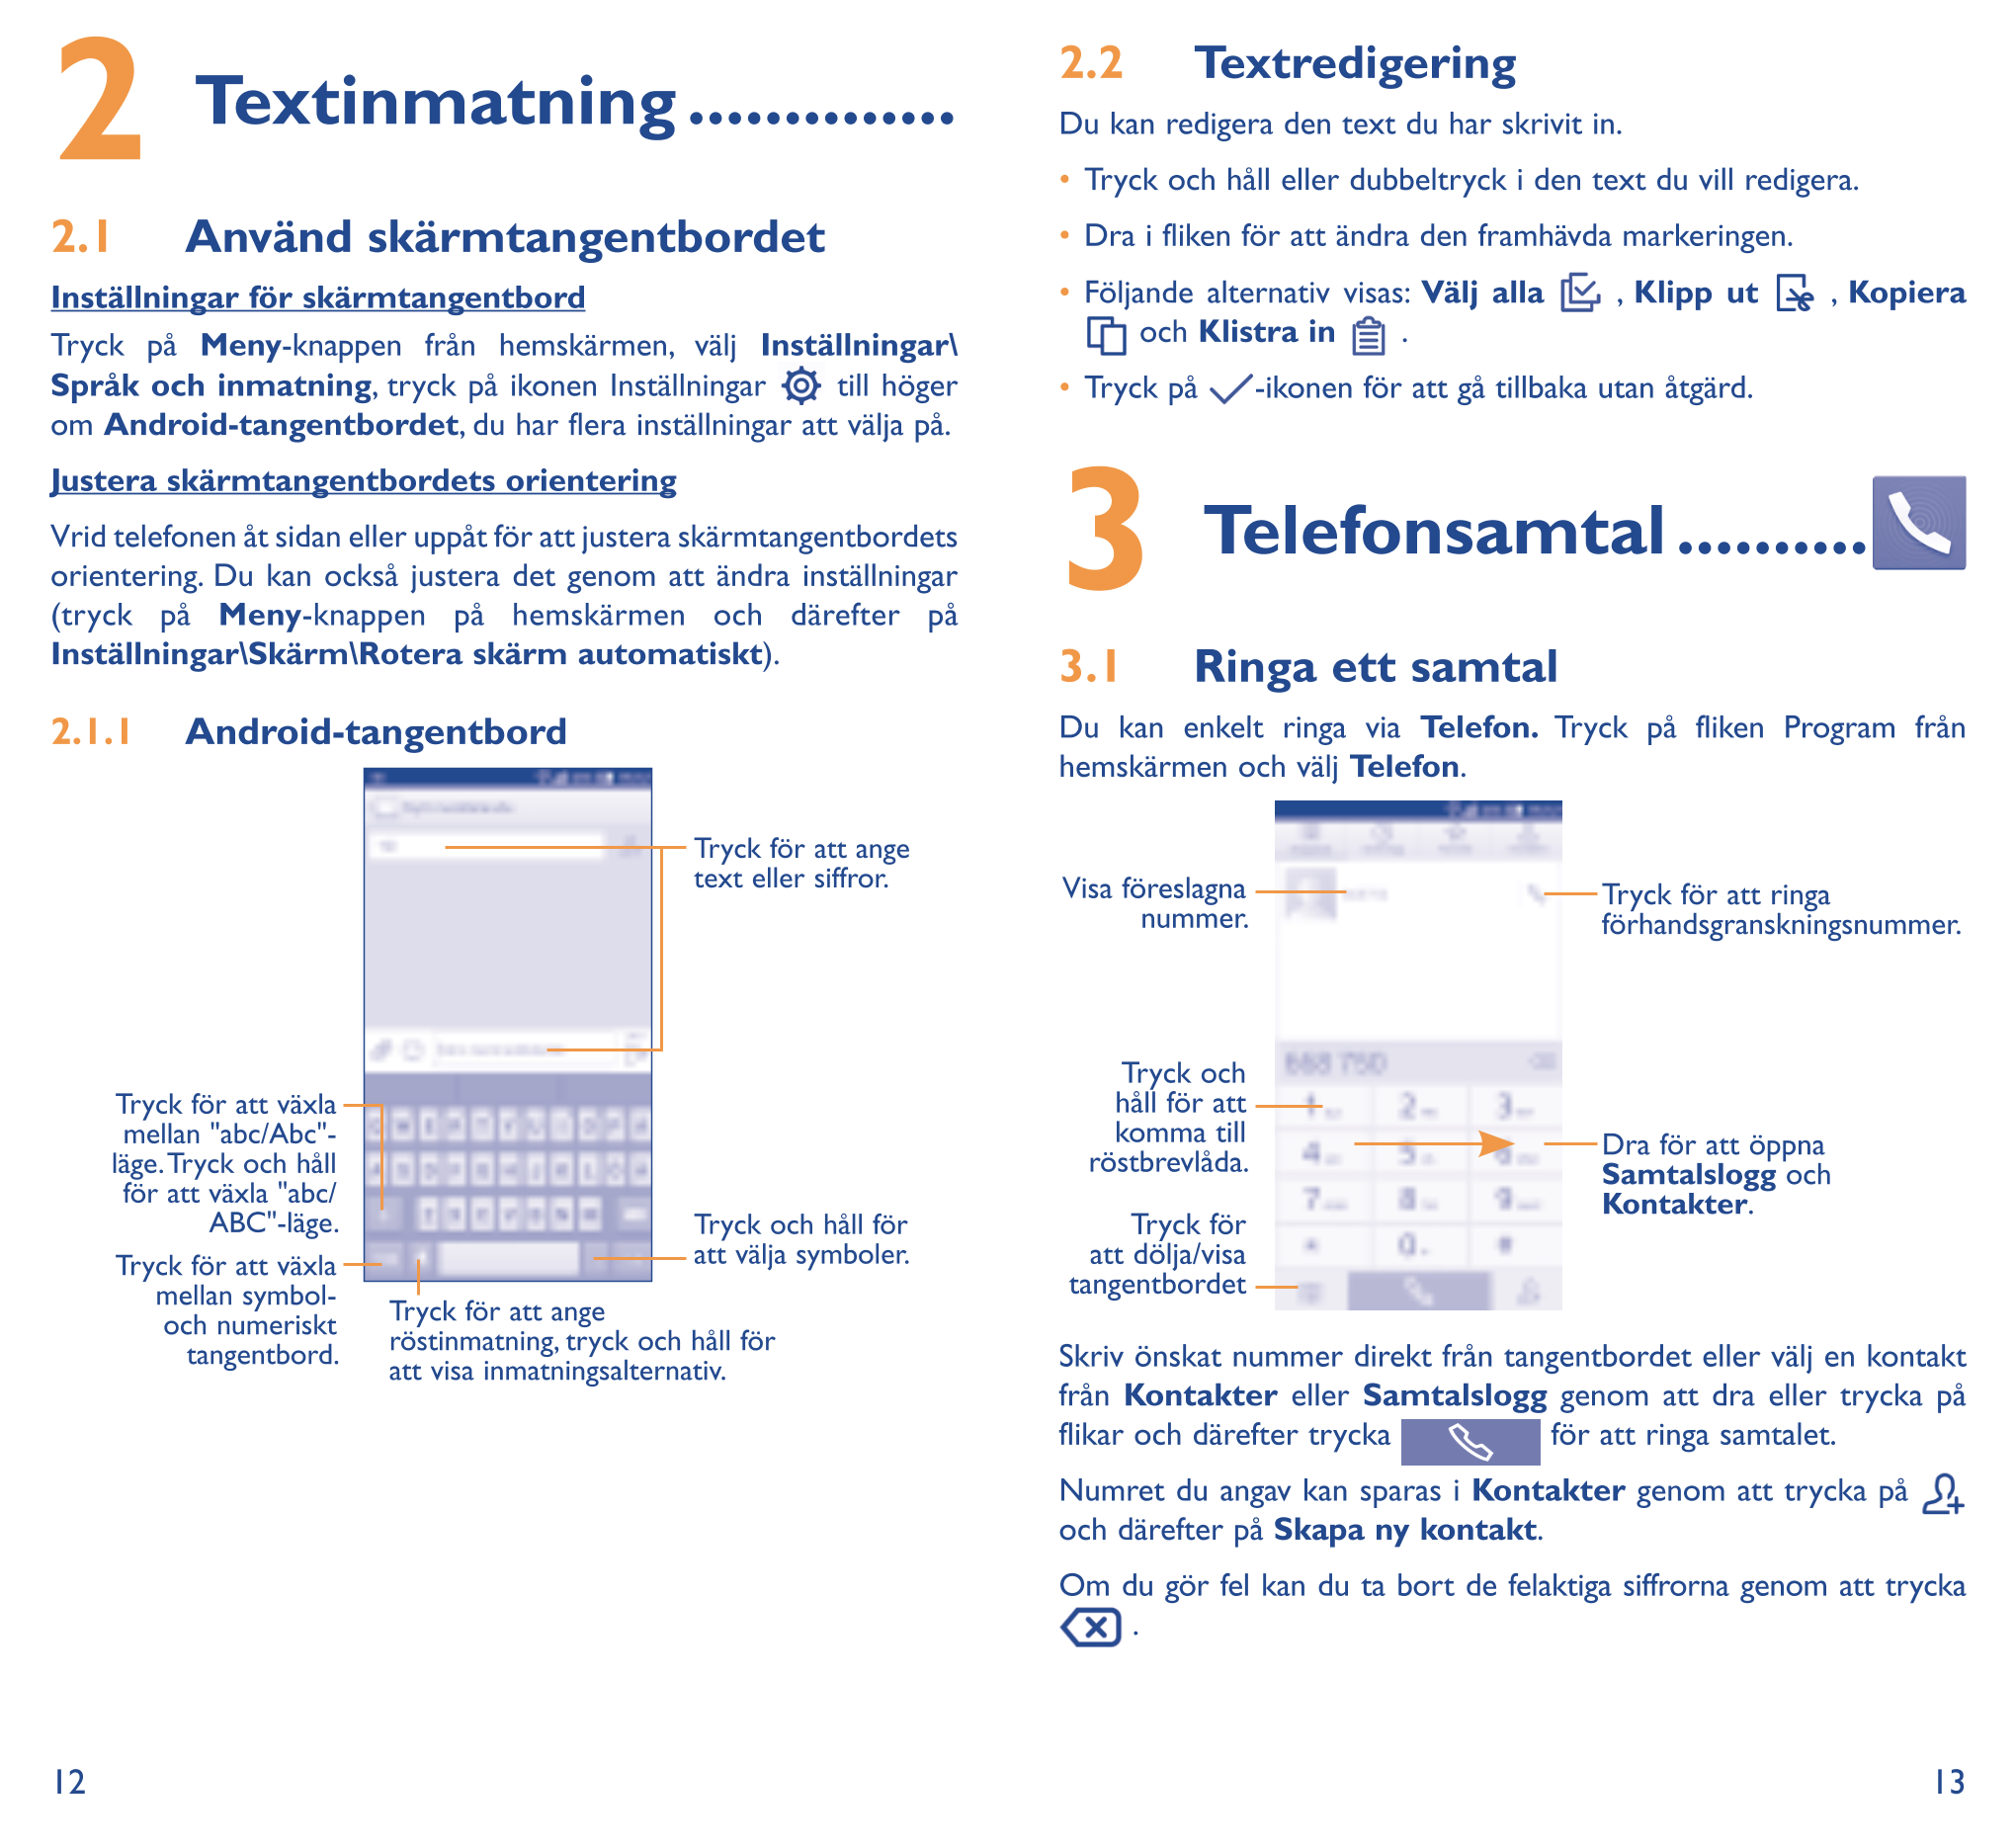 2  Textinmatning �������������� Du kan redigera den text du har skrivit in.Textredigering 2�2
•  Tryck och håll eller dubbeltryc